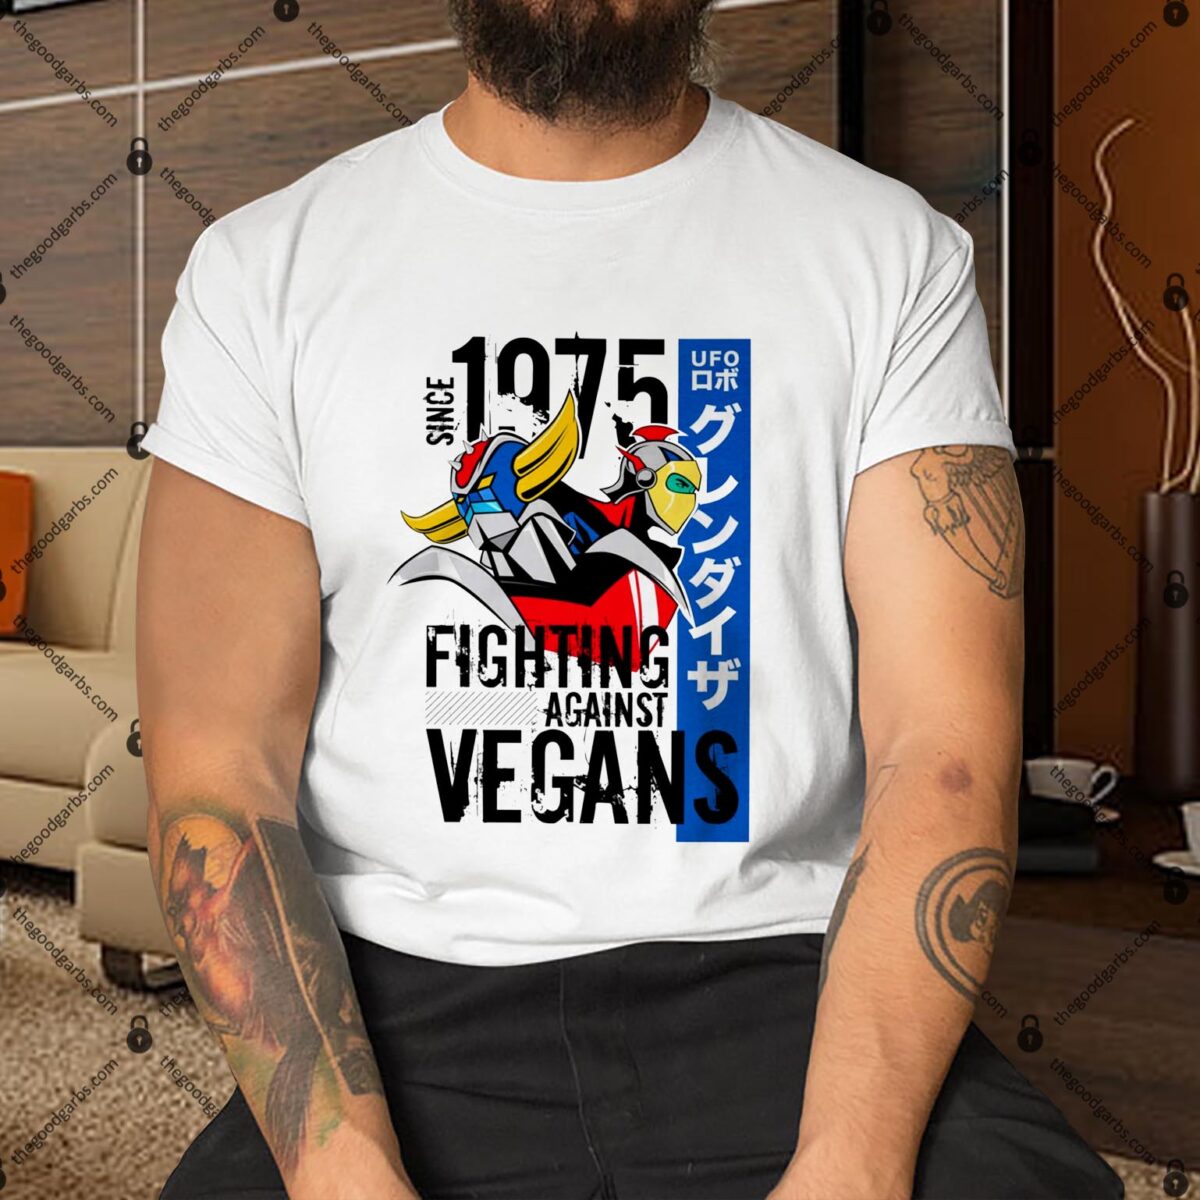 Fighting Against Vegans Shirt